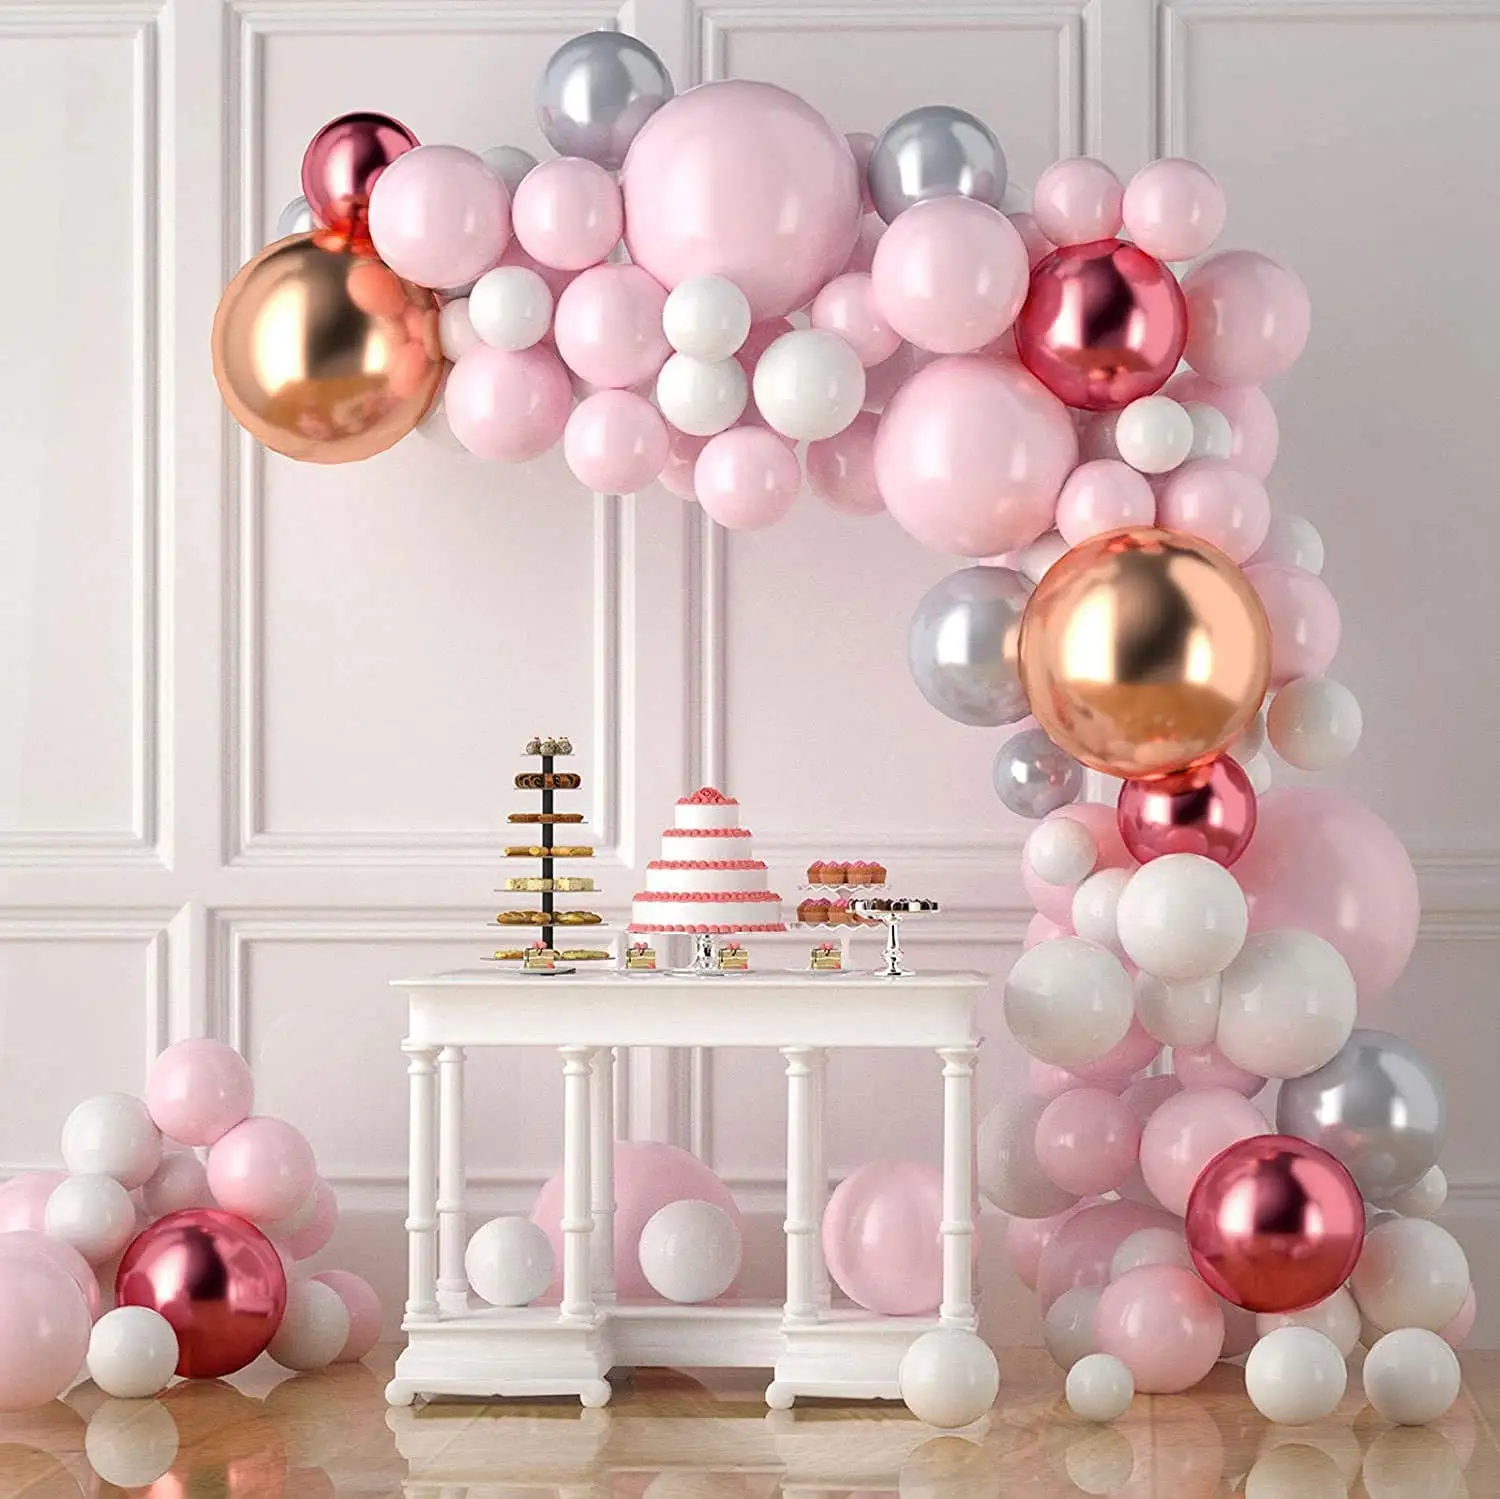 Kit de balões 109 peças, balões pastel macaron rosa, arco de guirlanda, metálicos, vermelho, prata e branco, para festa de chá de bebê